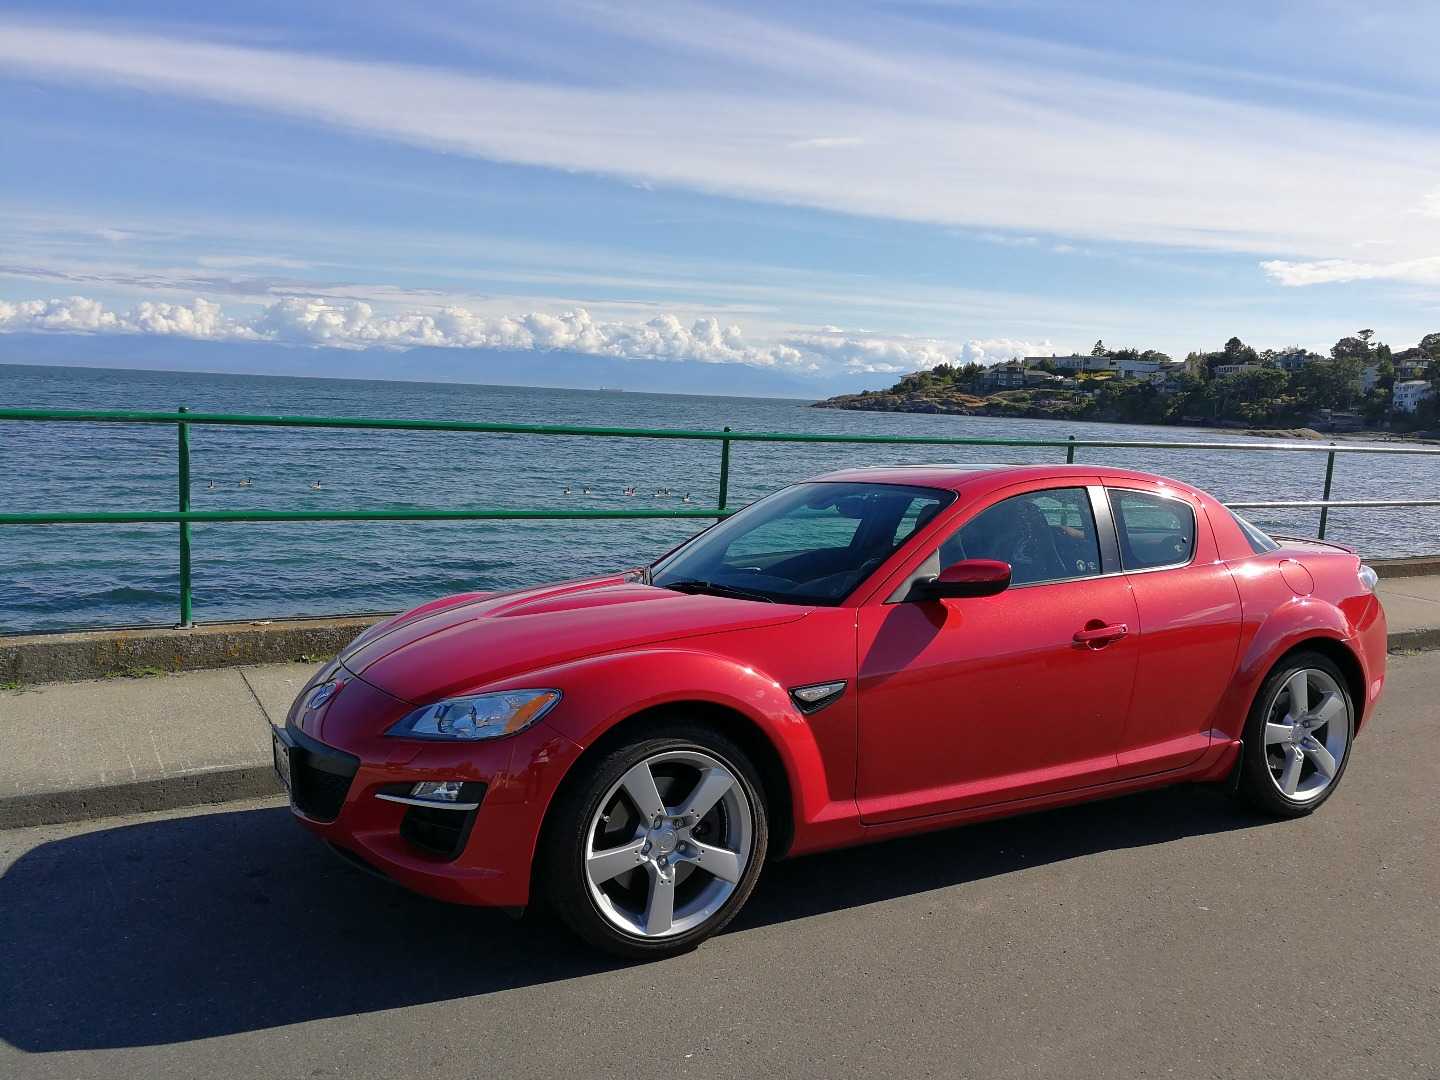 Отзывы реальных владельцев Mazda RX8, описание достоинств и недостатков